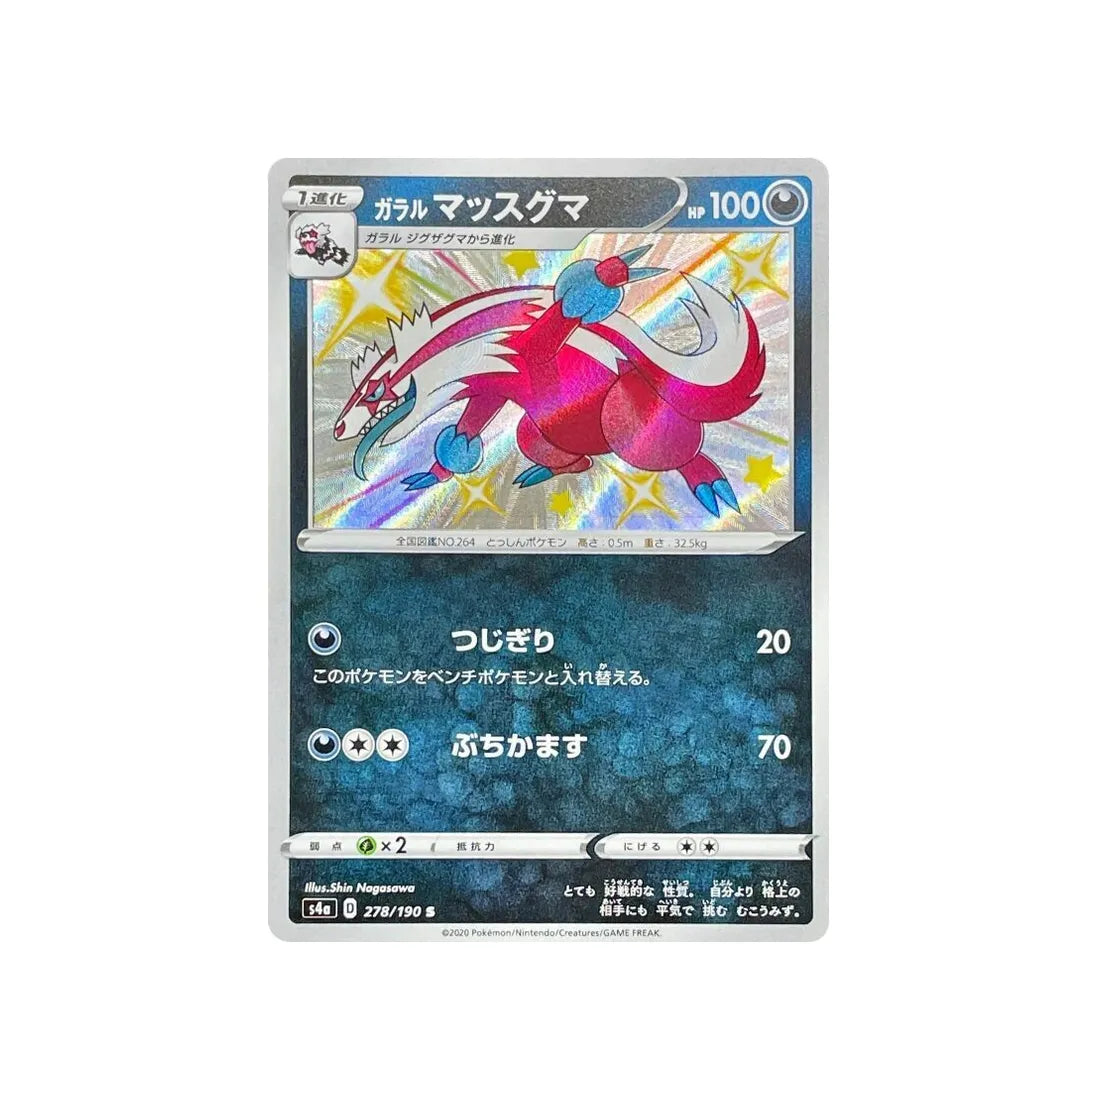 linéon-de-galar-carte-pokemon-shiny-star-s4a-278